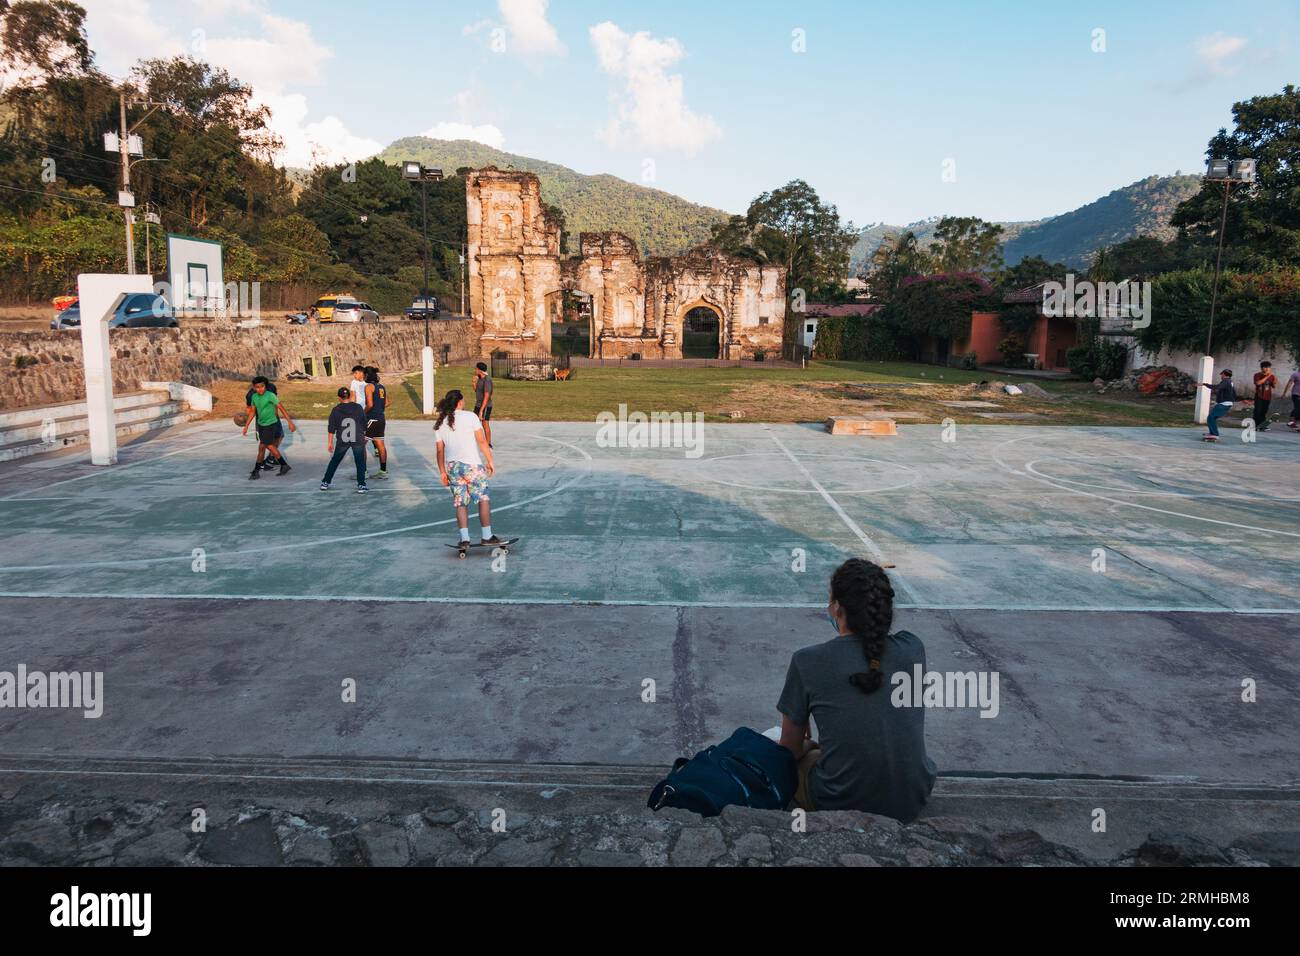 Une femme regarde des enfants jouer au basket-ball sur un court public, avec les ruines d'un bâtiment colonial espagnol reposant derrière, à Antigua Guatemala Banque D'Images